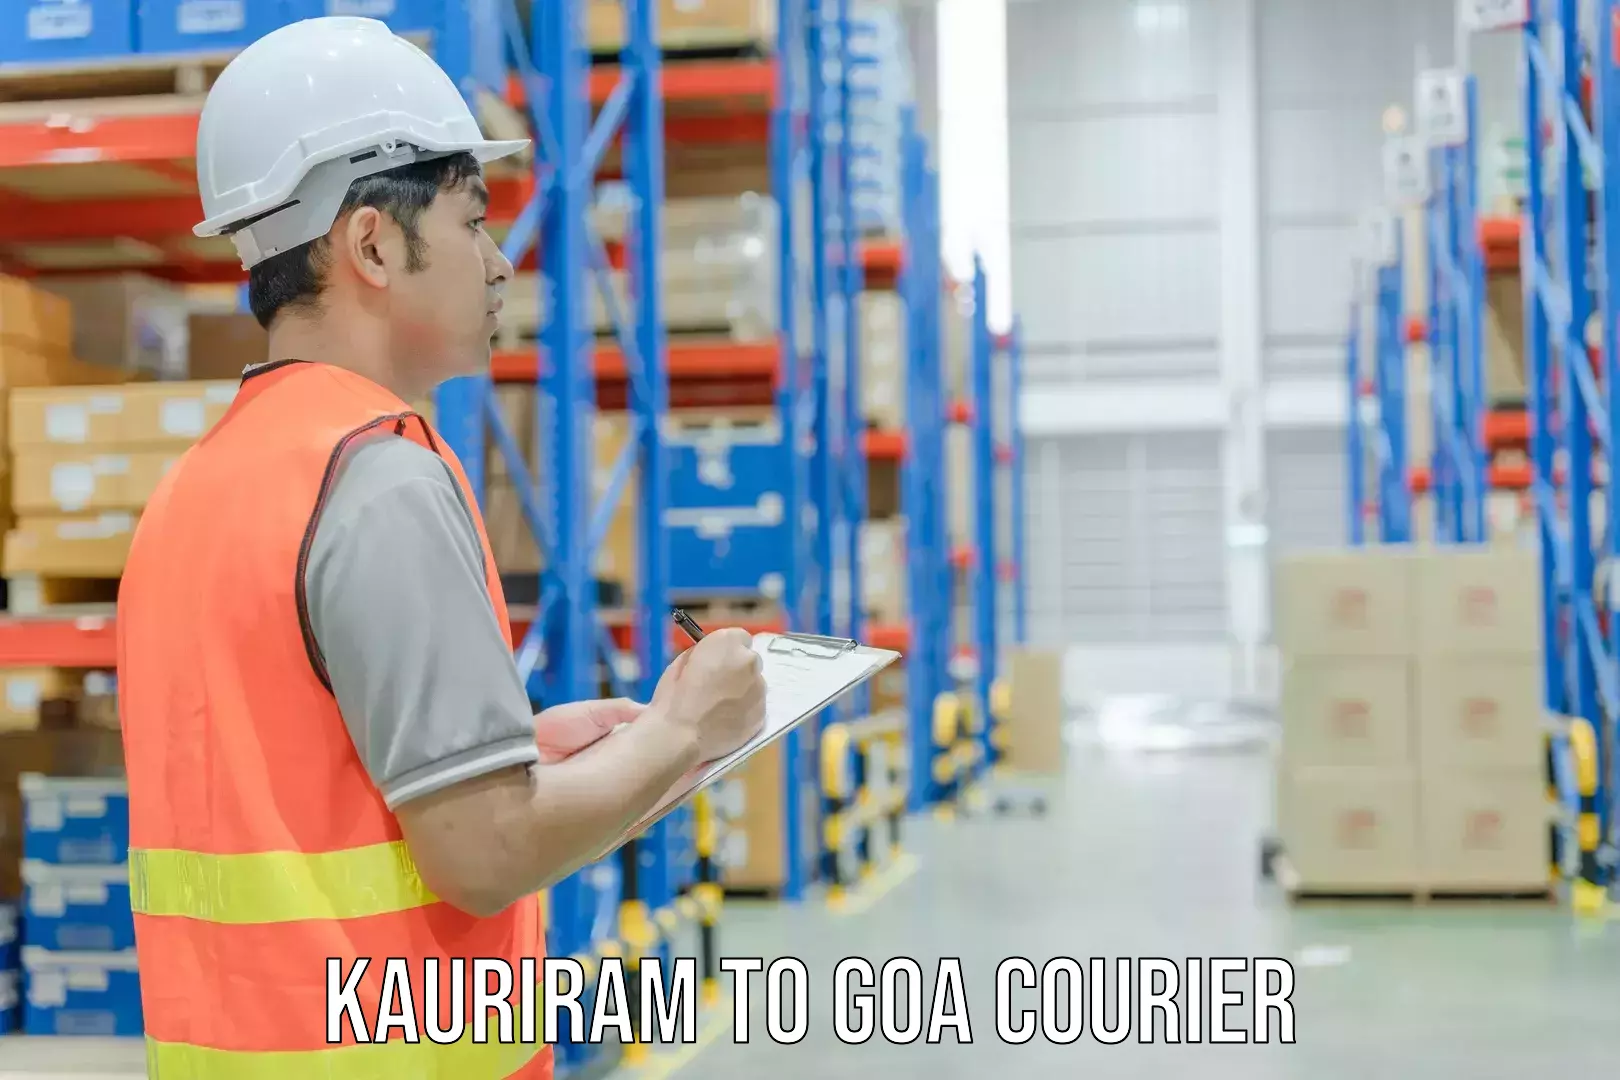 Full-service courier options Kauriram to Panjim